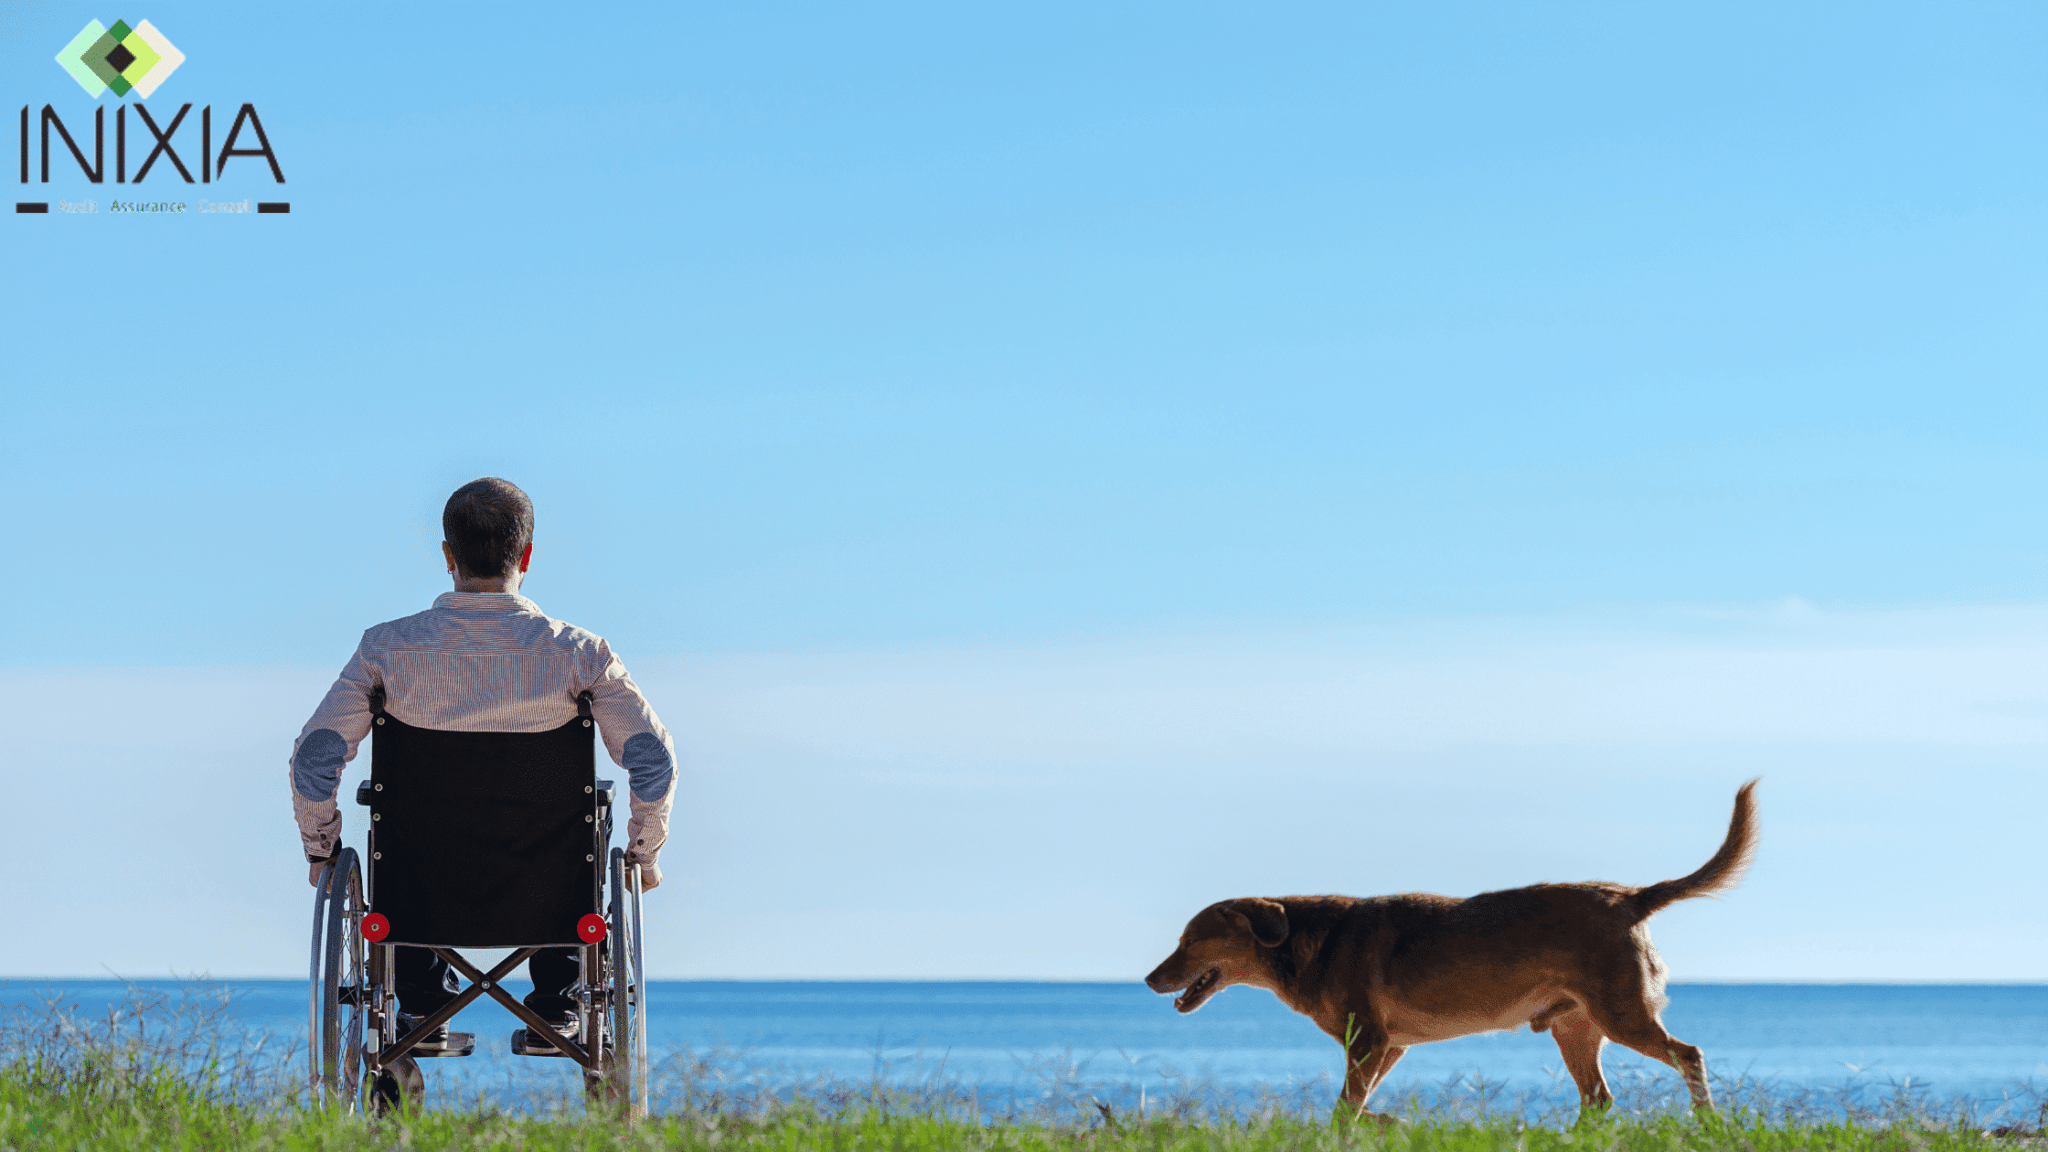 Assurance IPP - Un homme en fauteuil roulant avec son chien regarde la mer.